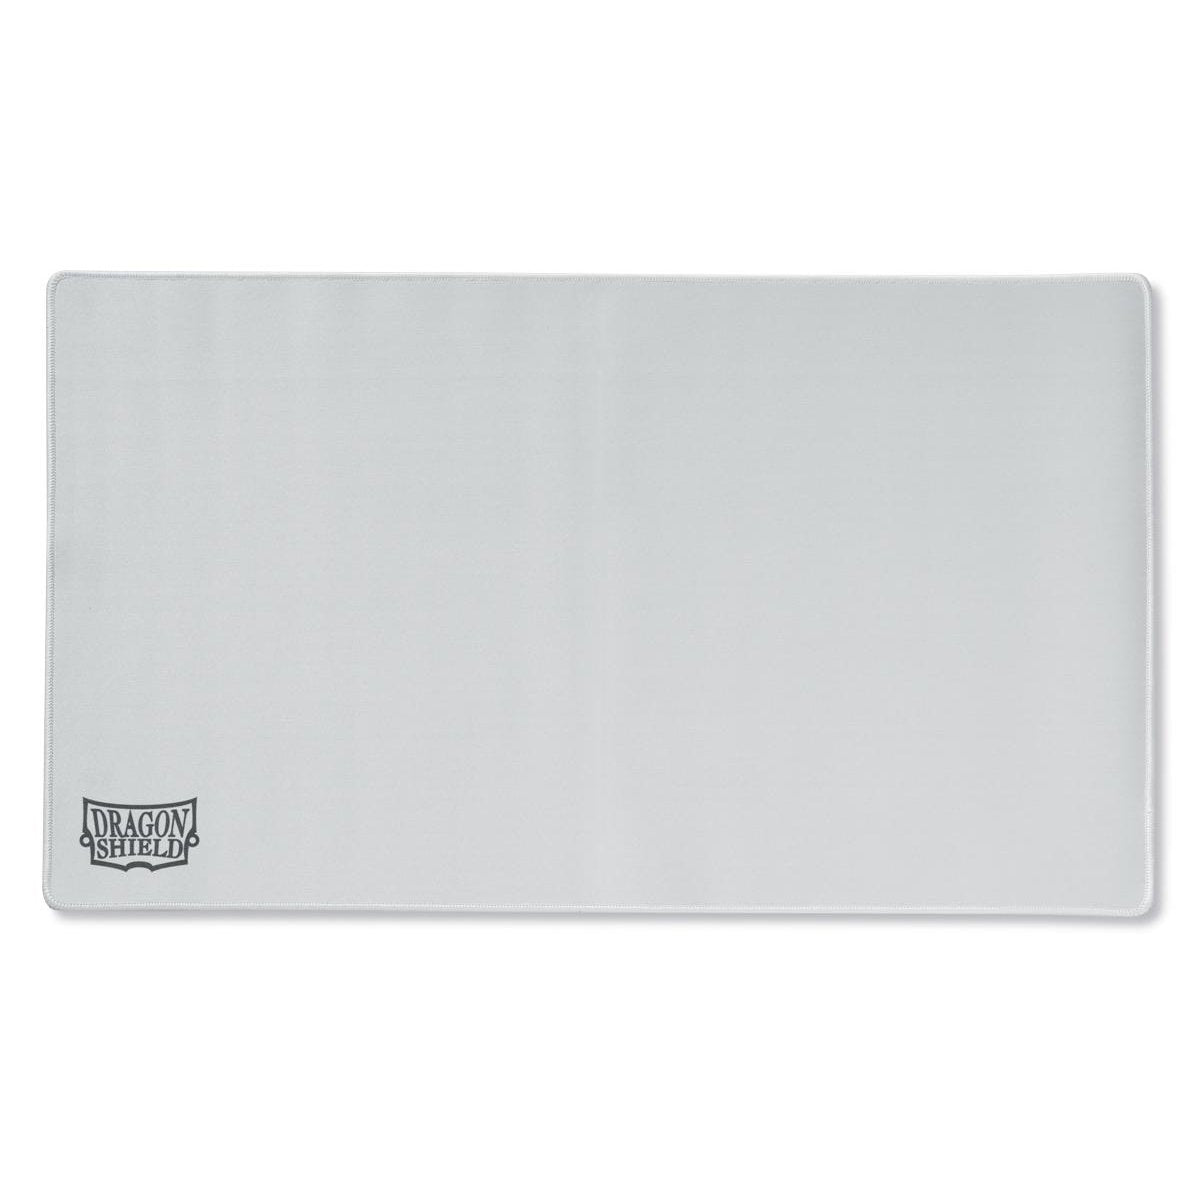 Dragon Shield - Playmat - Plain White